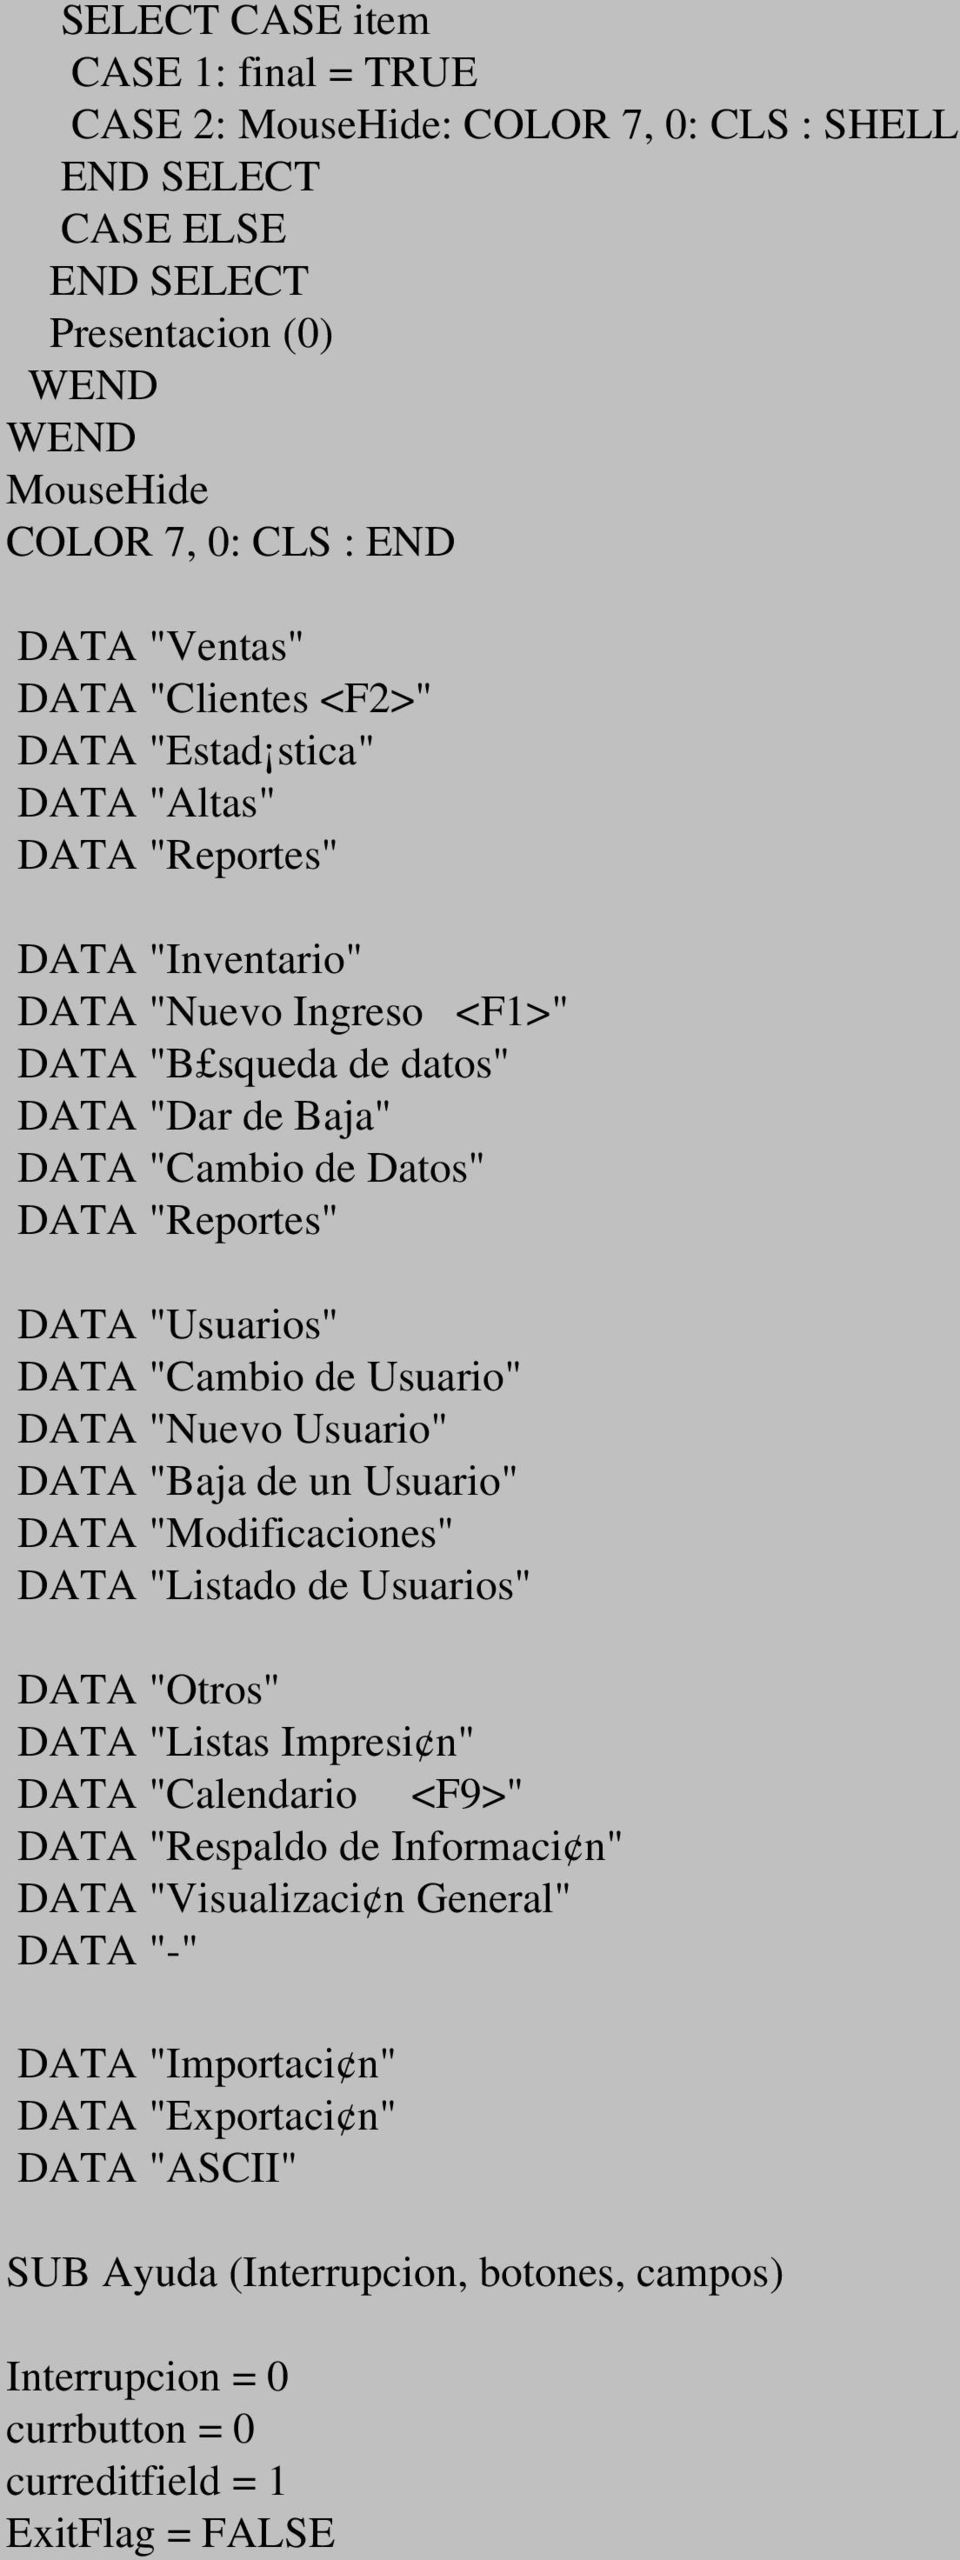 Usuario" DATA "Nuevo Usuario" DATA "Baja de un Usuario" DATA "Modificaciones" DATA "Listado de Usuarios" DATA "Otros" DATA "Listas Impresi n" DATA "Calendario <F9>" DATA "Respaldo de Informaci n"